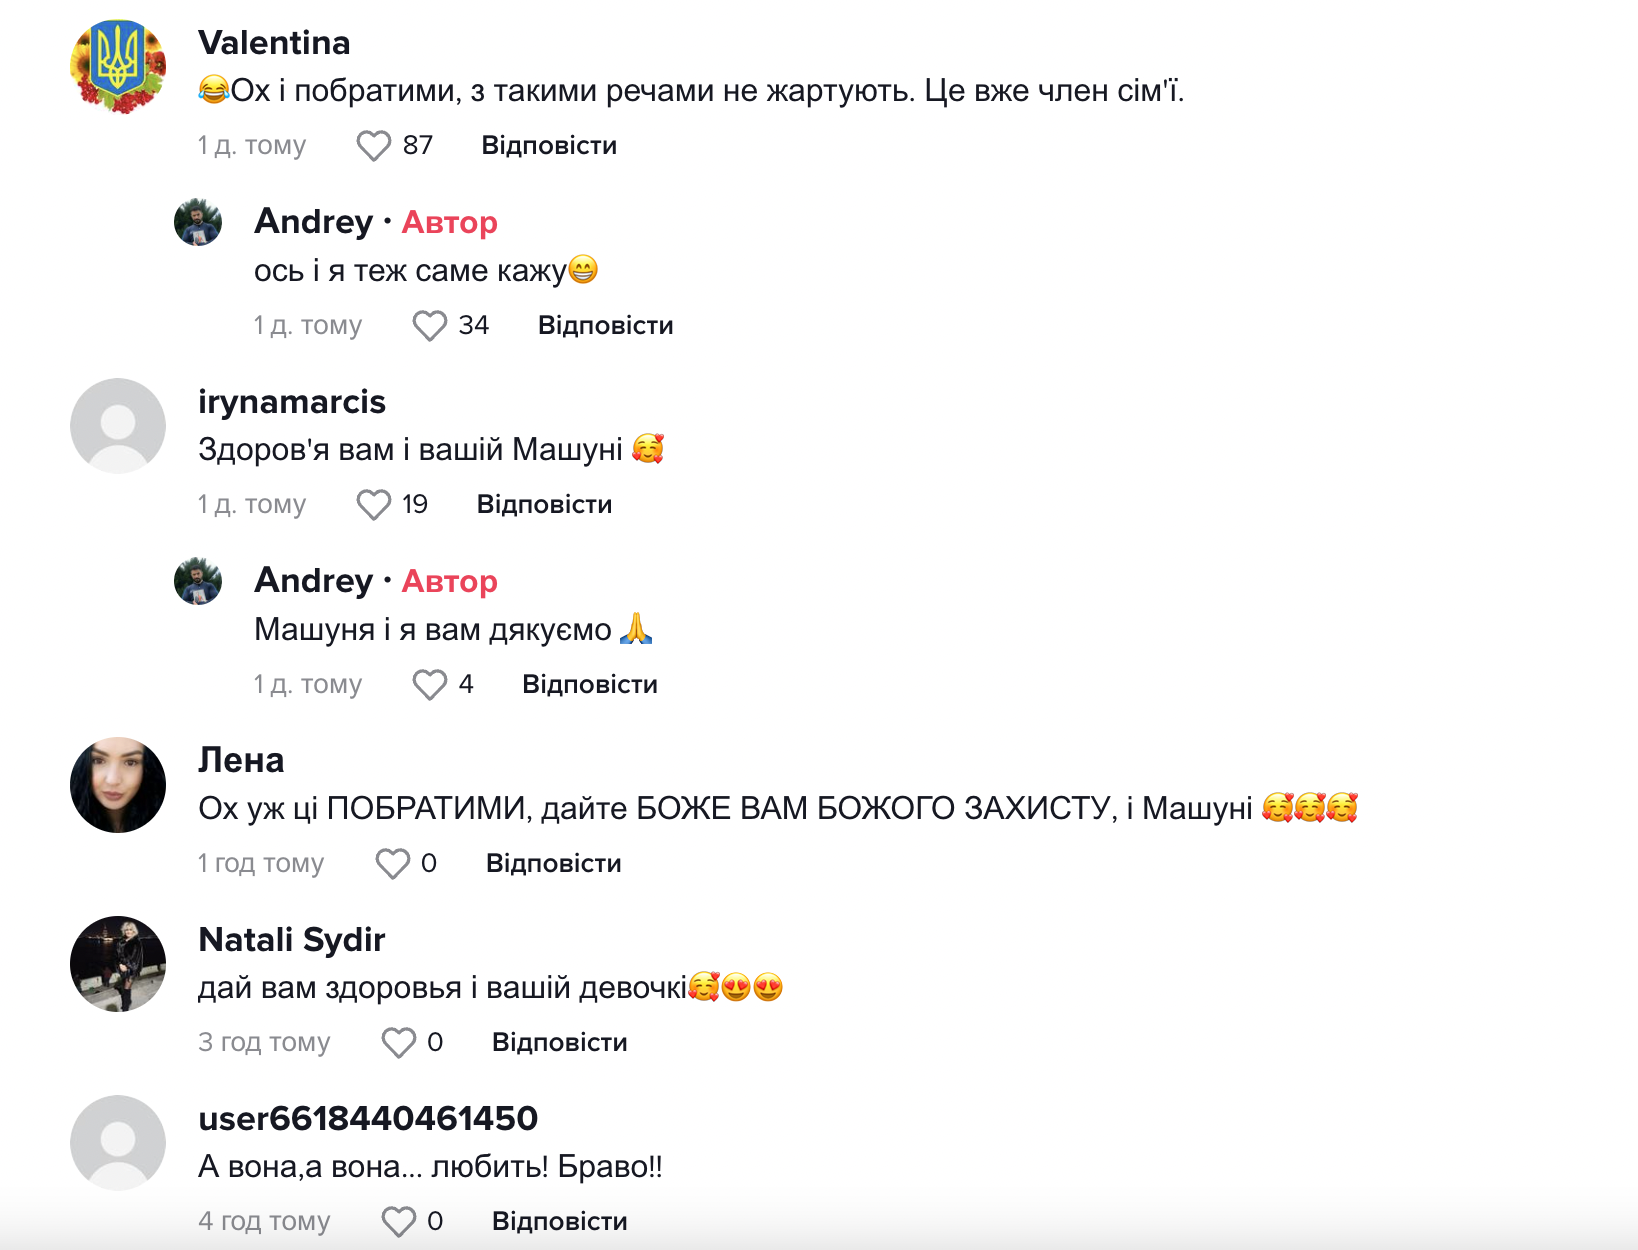 "Привет, моя девочка!": украинский военный показал нутрию, с которой "подружился" на службе. Видео